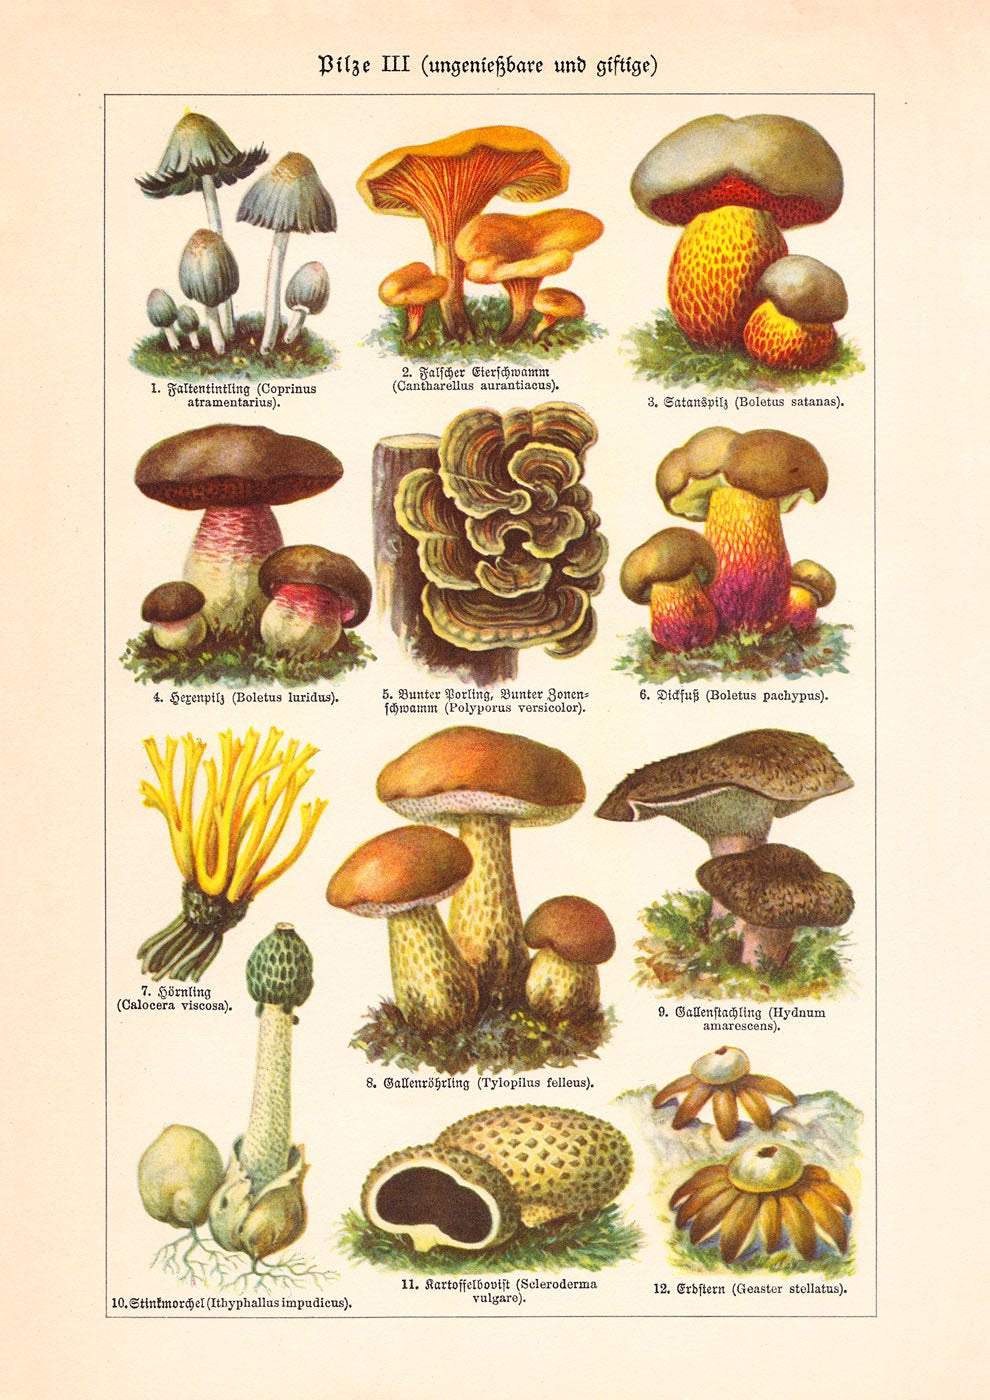 Название грибов